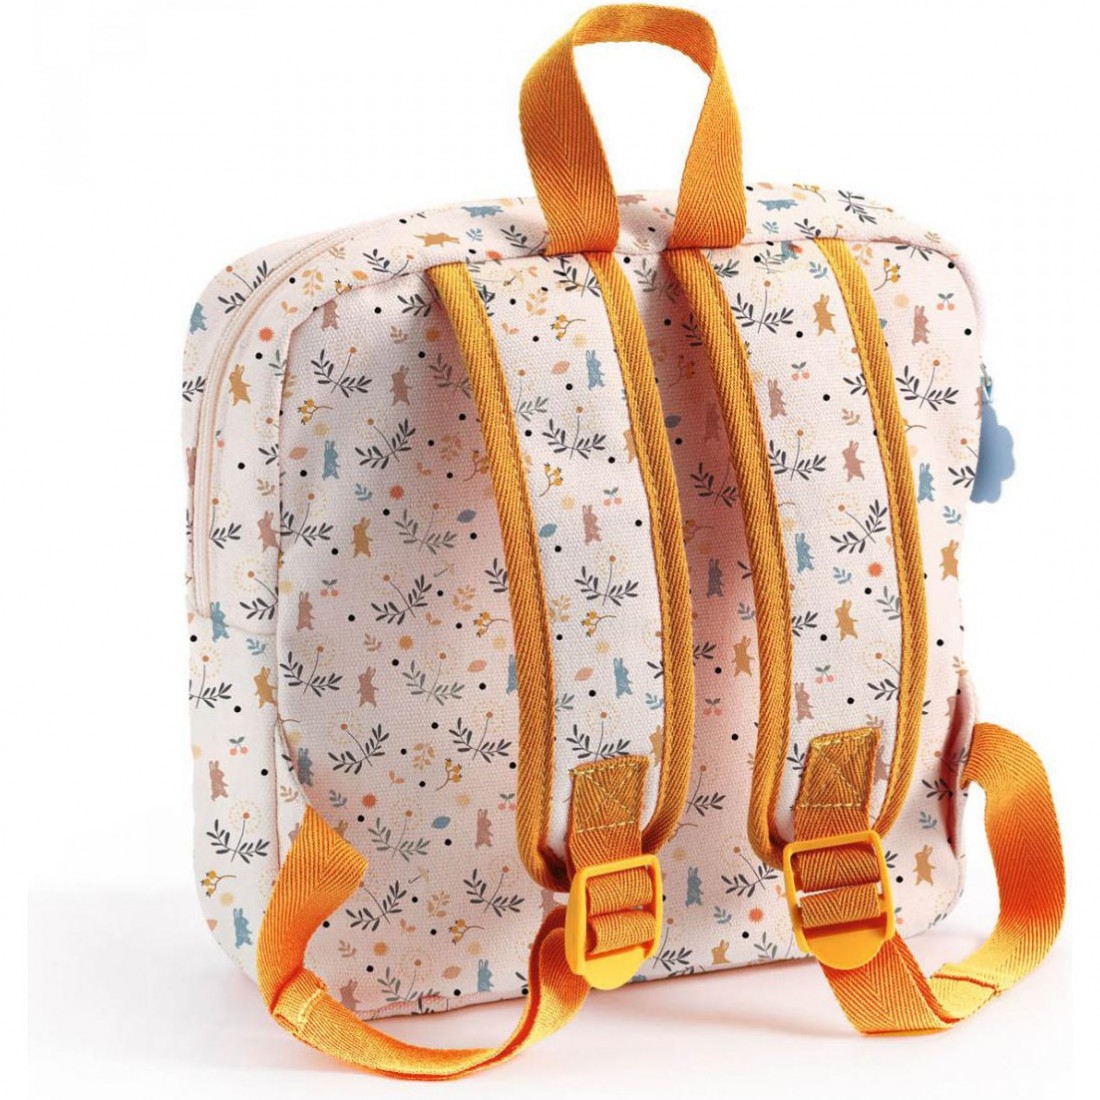 Belle mini valise valise coffre s’adapte à bébé poupée cadeau